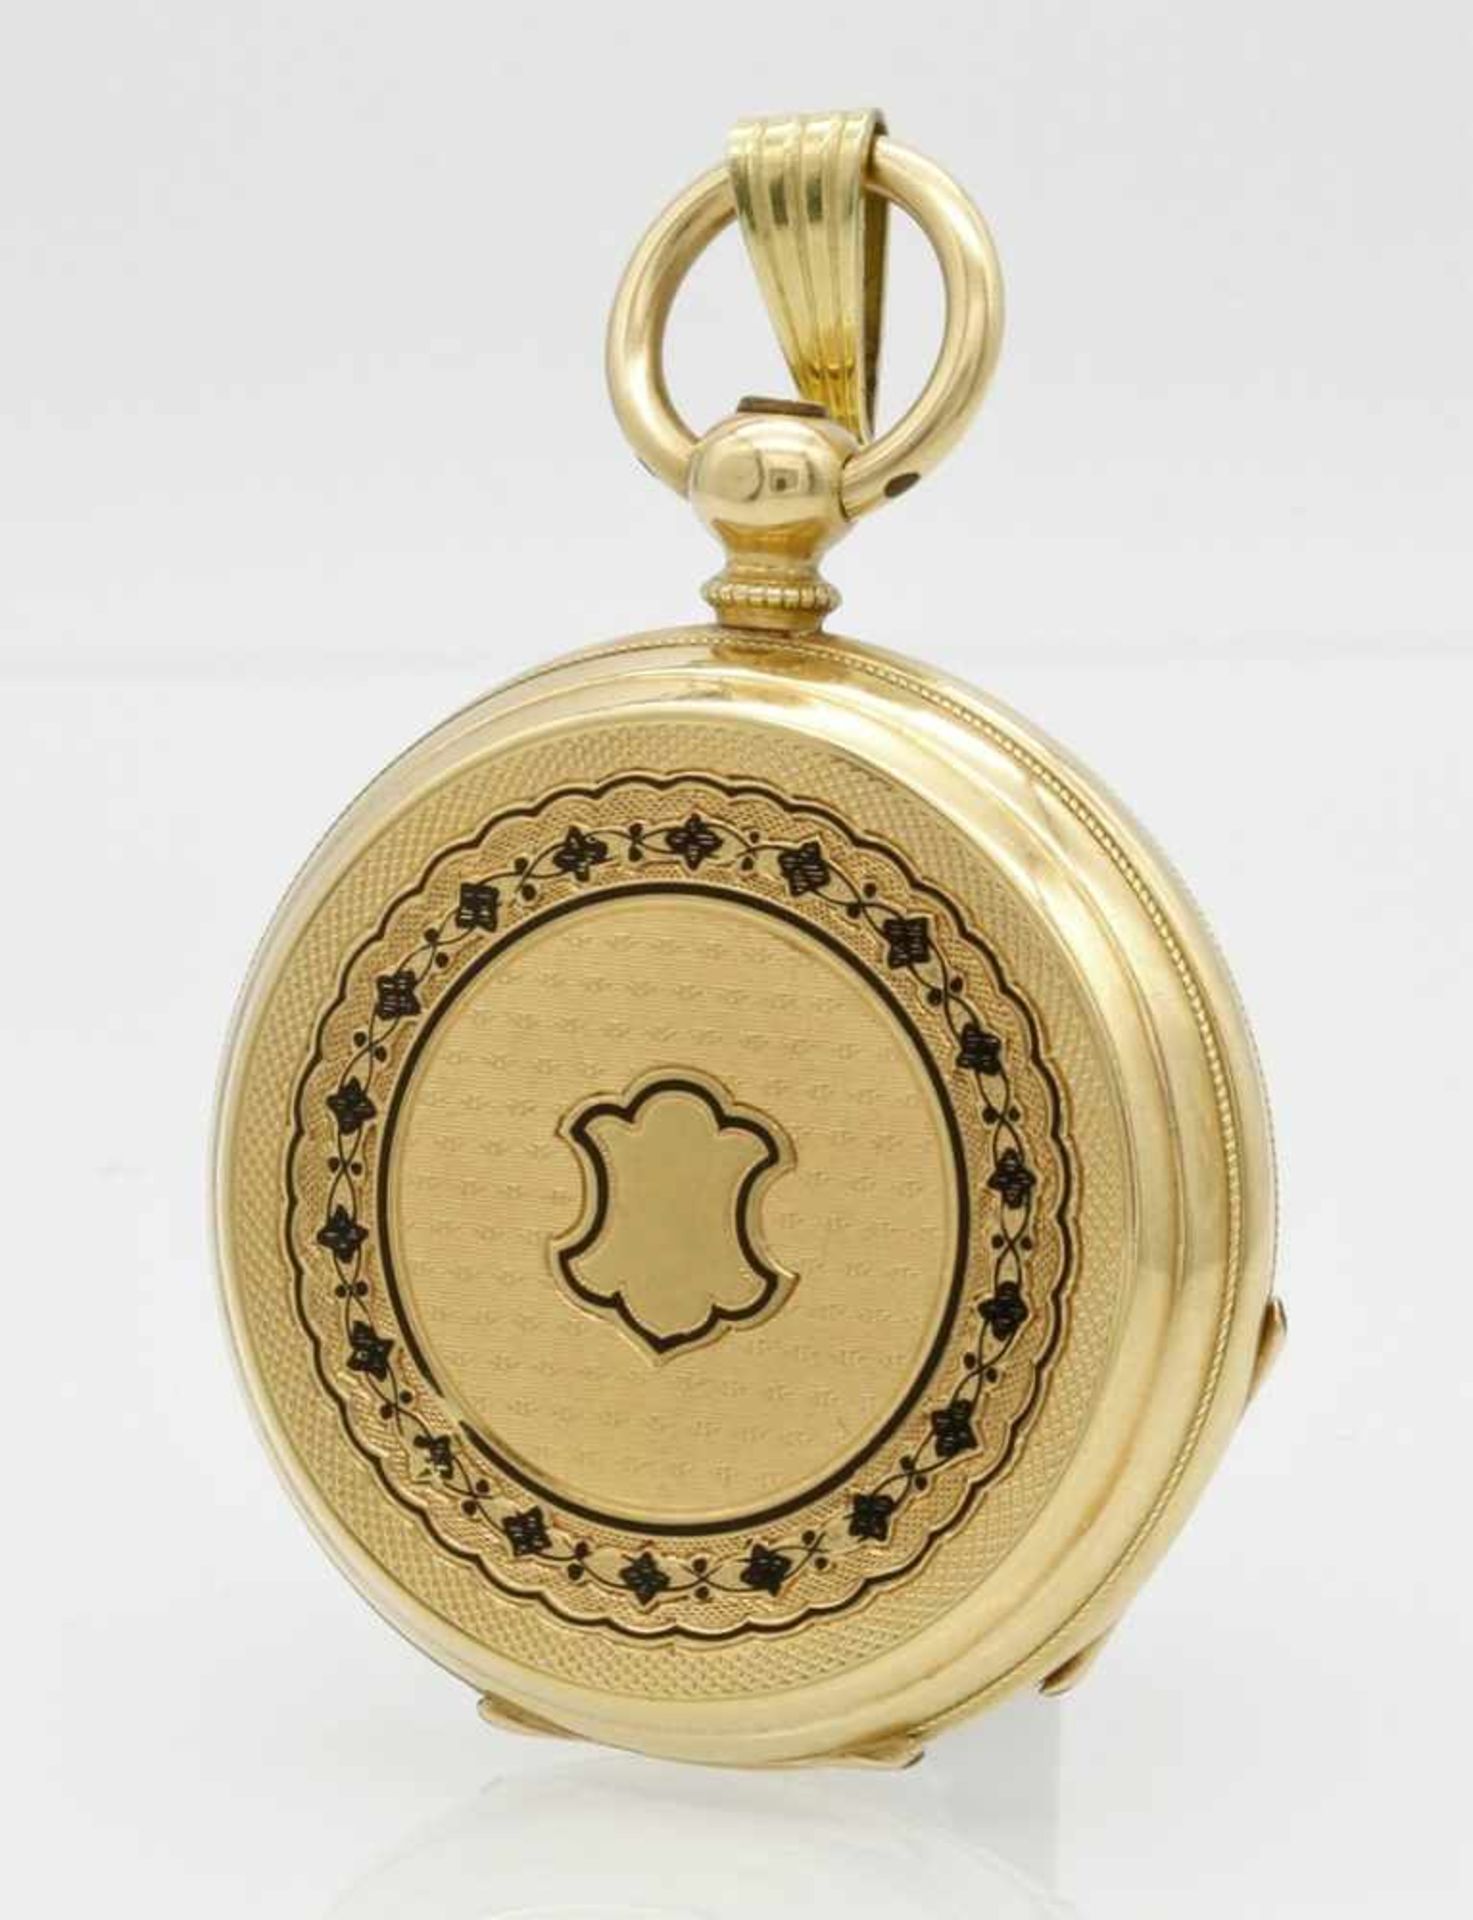 Goldene Damen Taschenuhr, um 1880 - Bild 2 aus 4